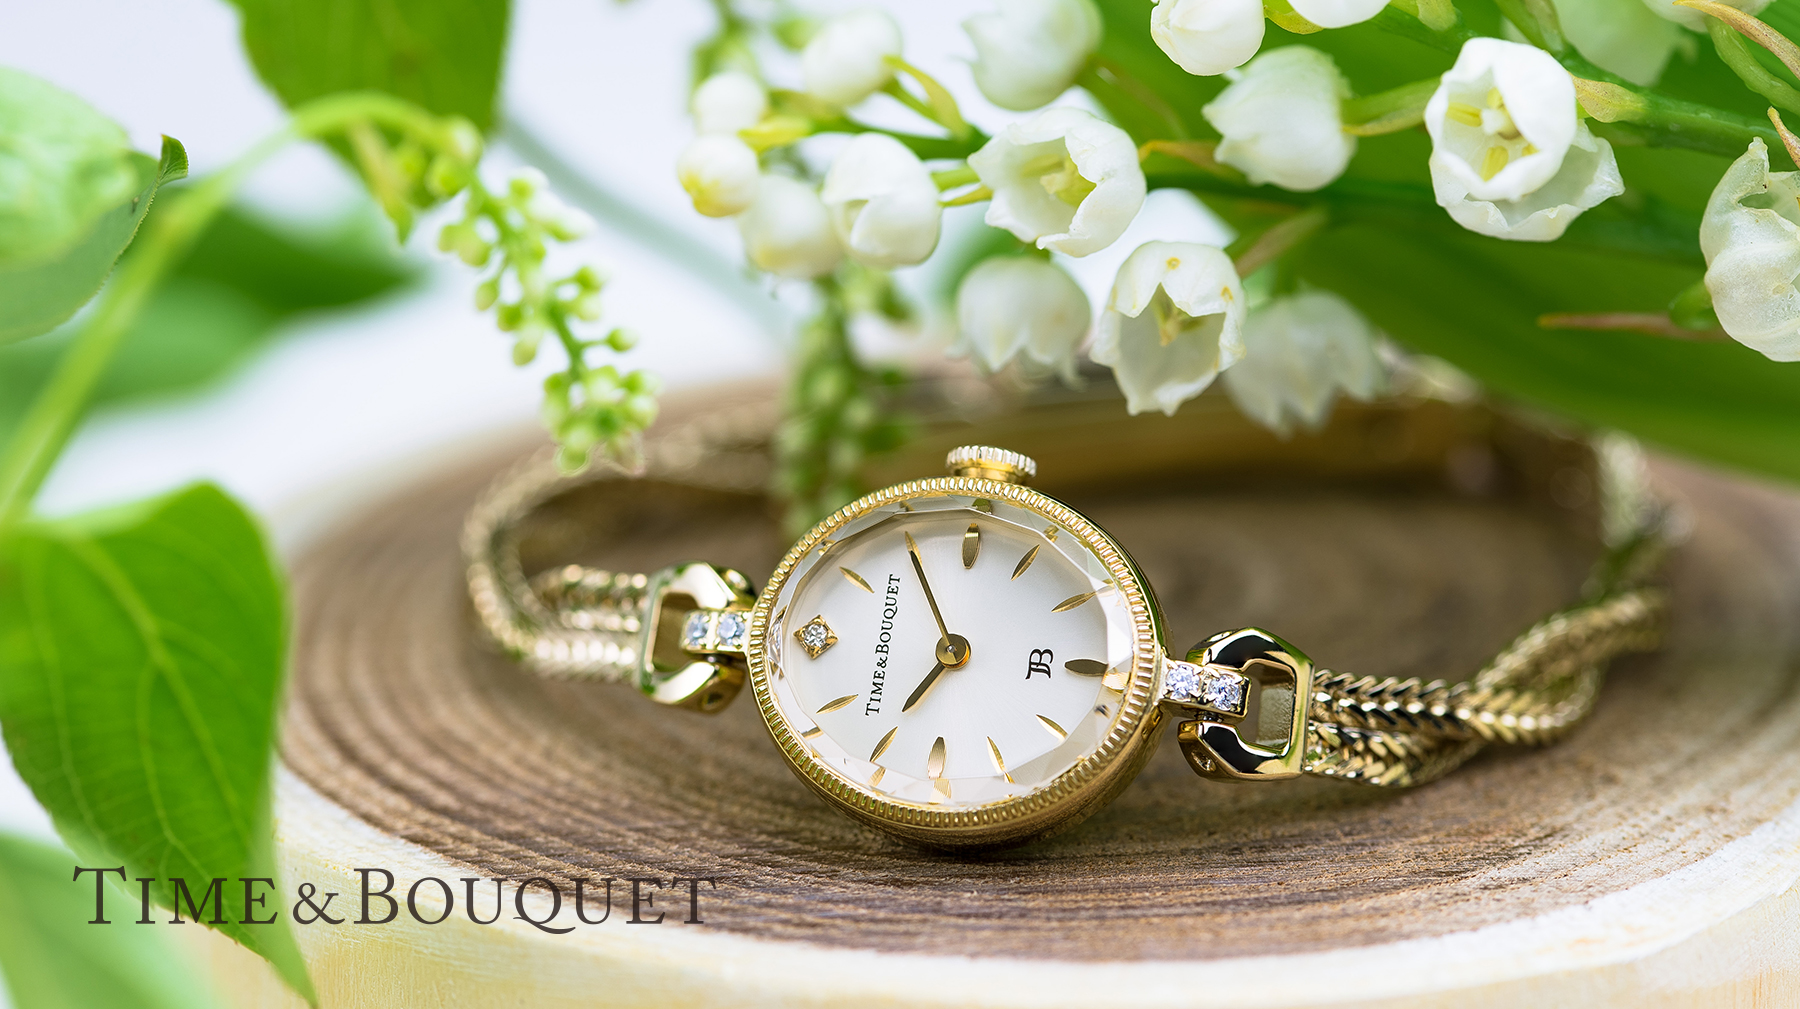 Time&Bouquet